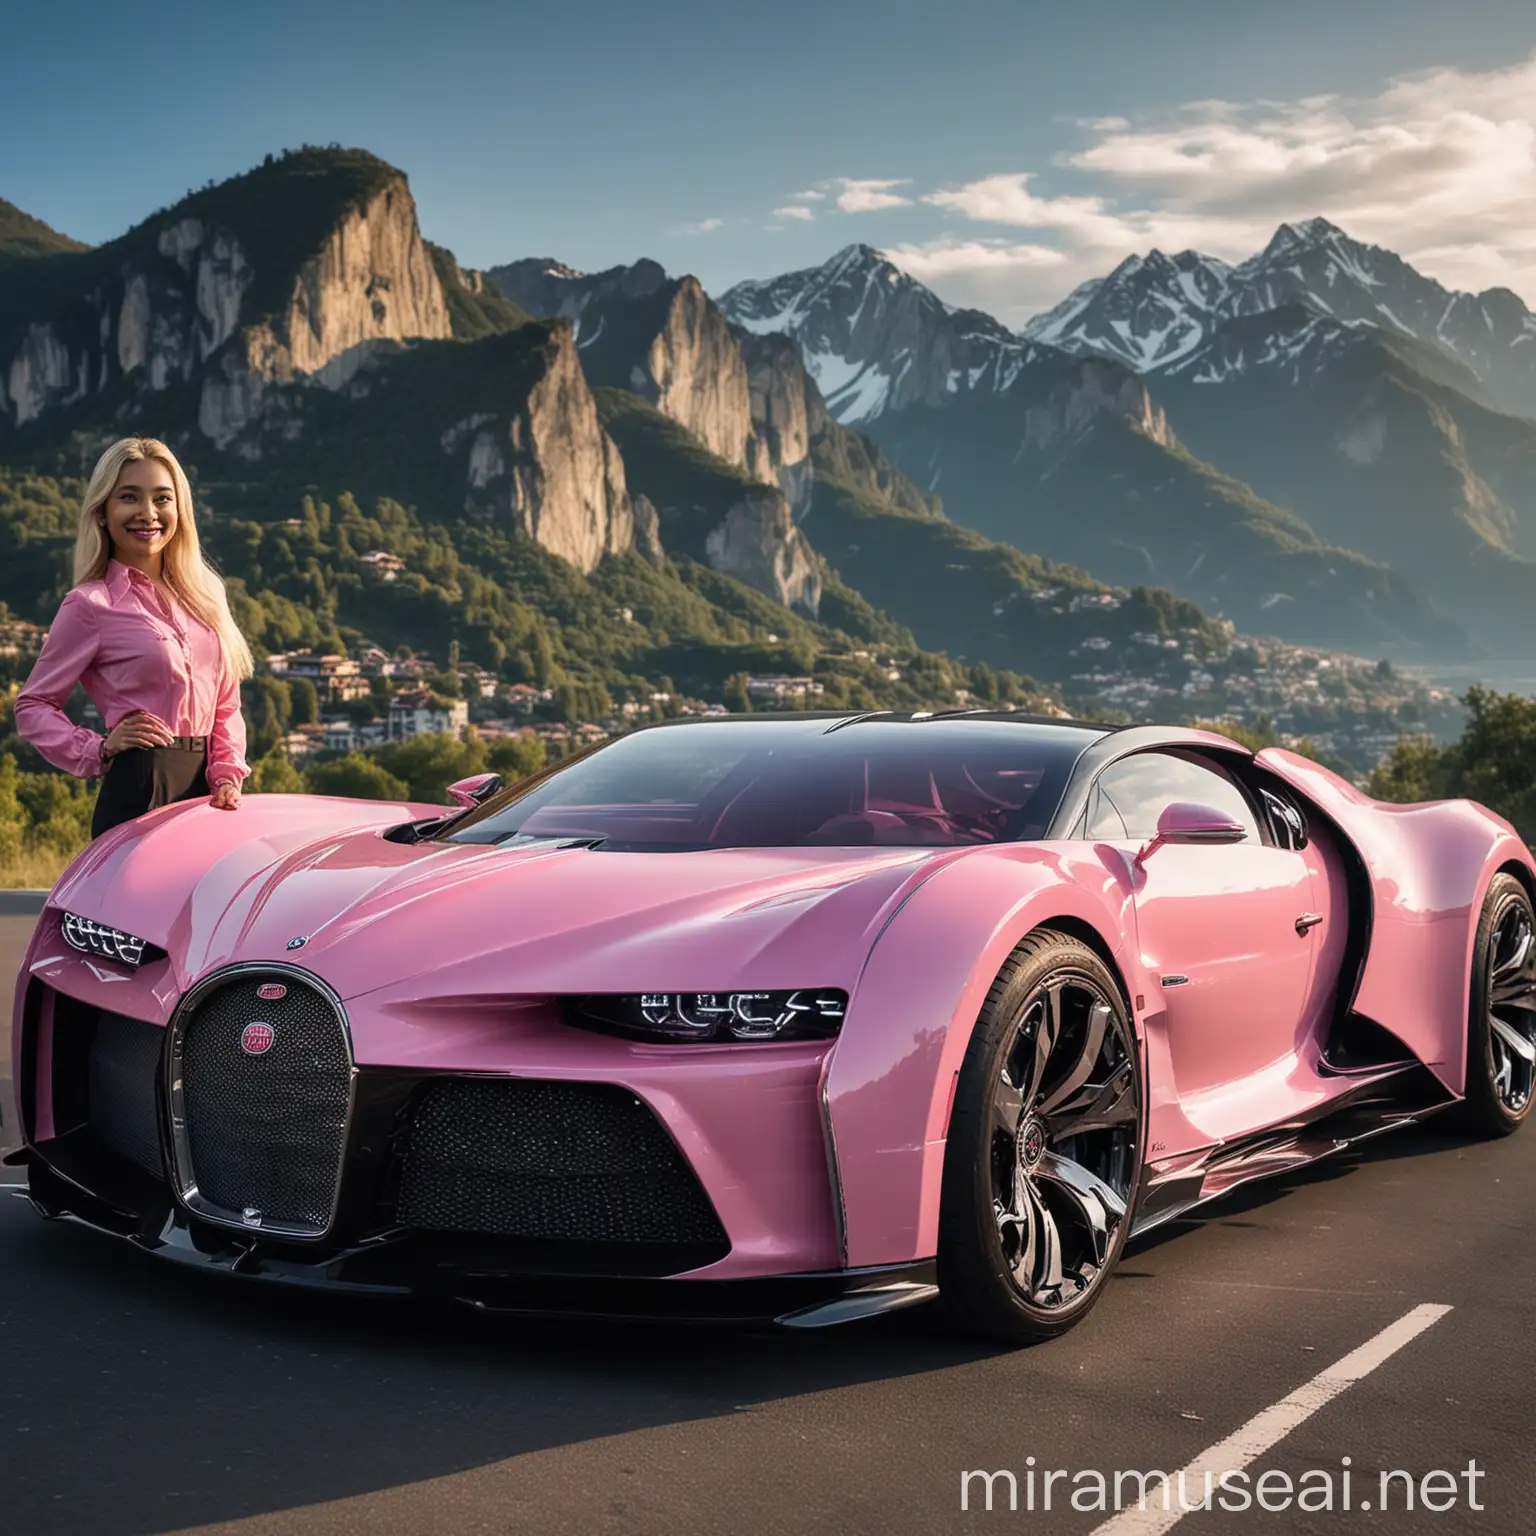 Seorang wanita Indonesia di sebelah pintu Bugatti La Voiture Noire berwarna pink dengan desain aerodinamis tersenyum tipis, rambut panjang berwarna pirang. Di latar belakangnya terdapat pegunungan indah di bawah langit biru cerah. Pegunungan memiliki pola yang berbeda-beda, menunjukkan jarak dan ketinggian yang berbeda-beda. Pencahayaannya natural dan terang, menonjolkan permukaan mobil yang mengkilat dan menciptakan pantulan pada permukaan tersebut.